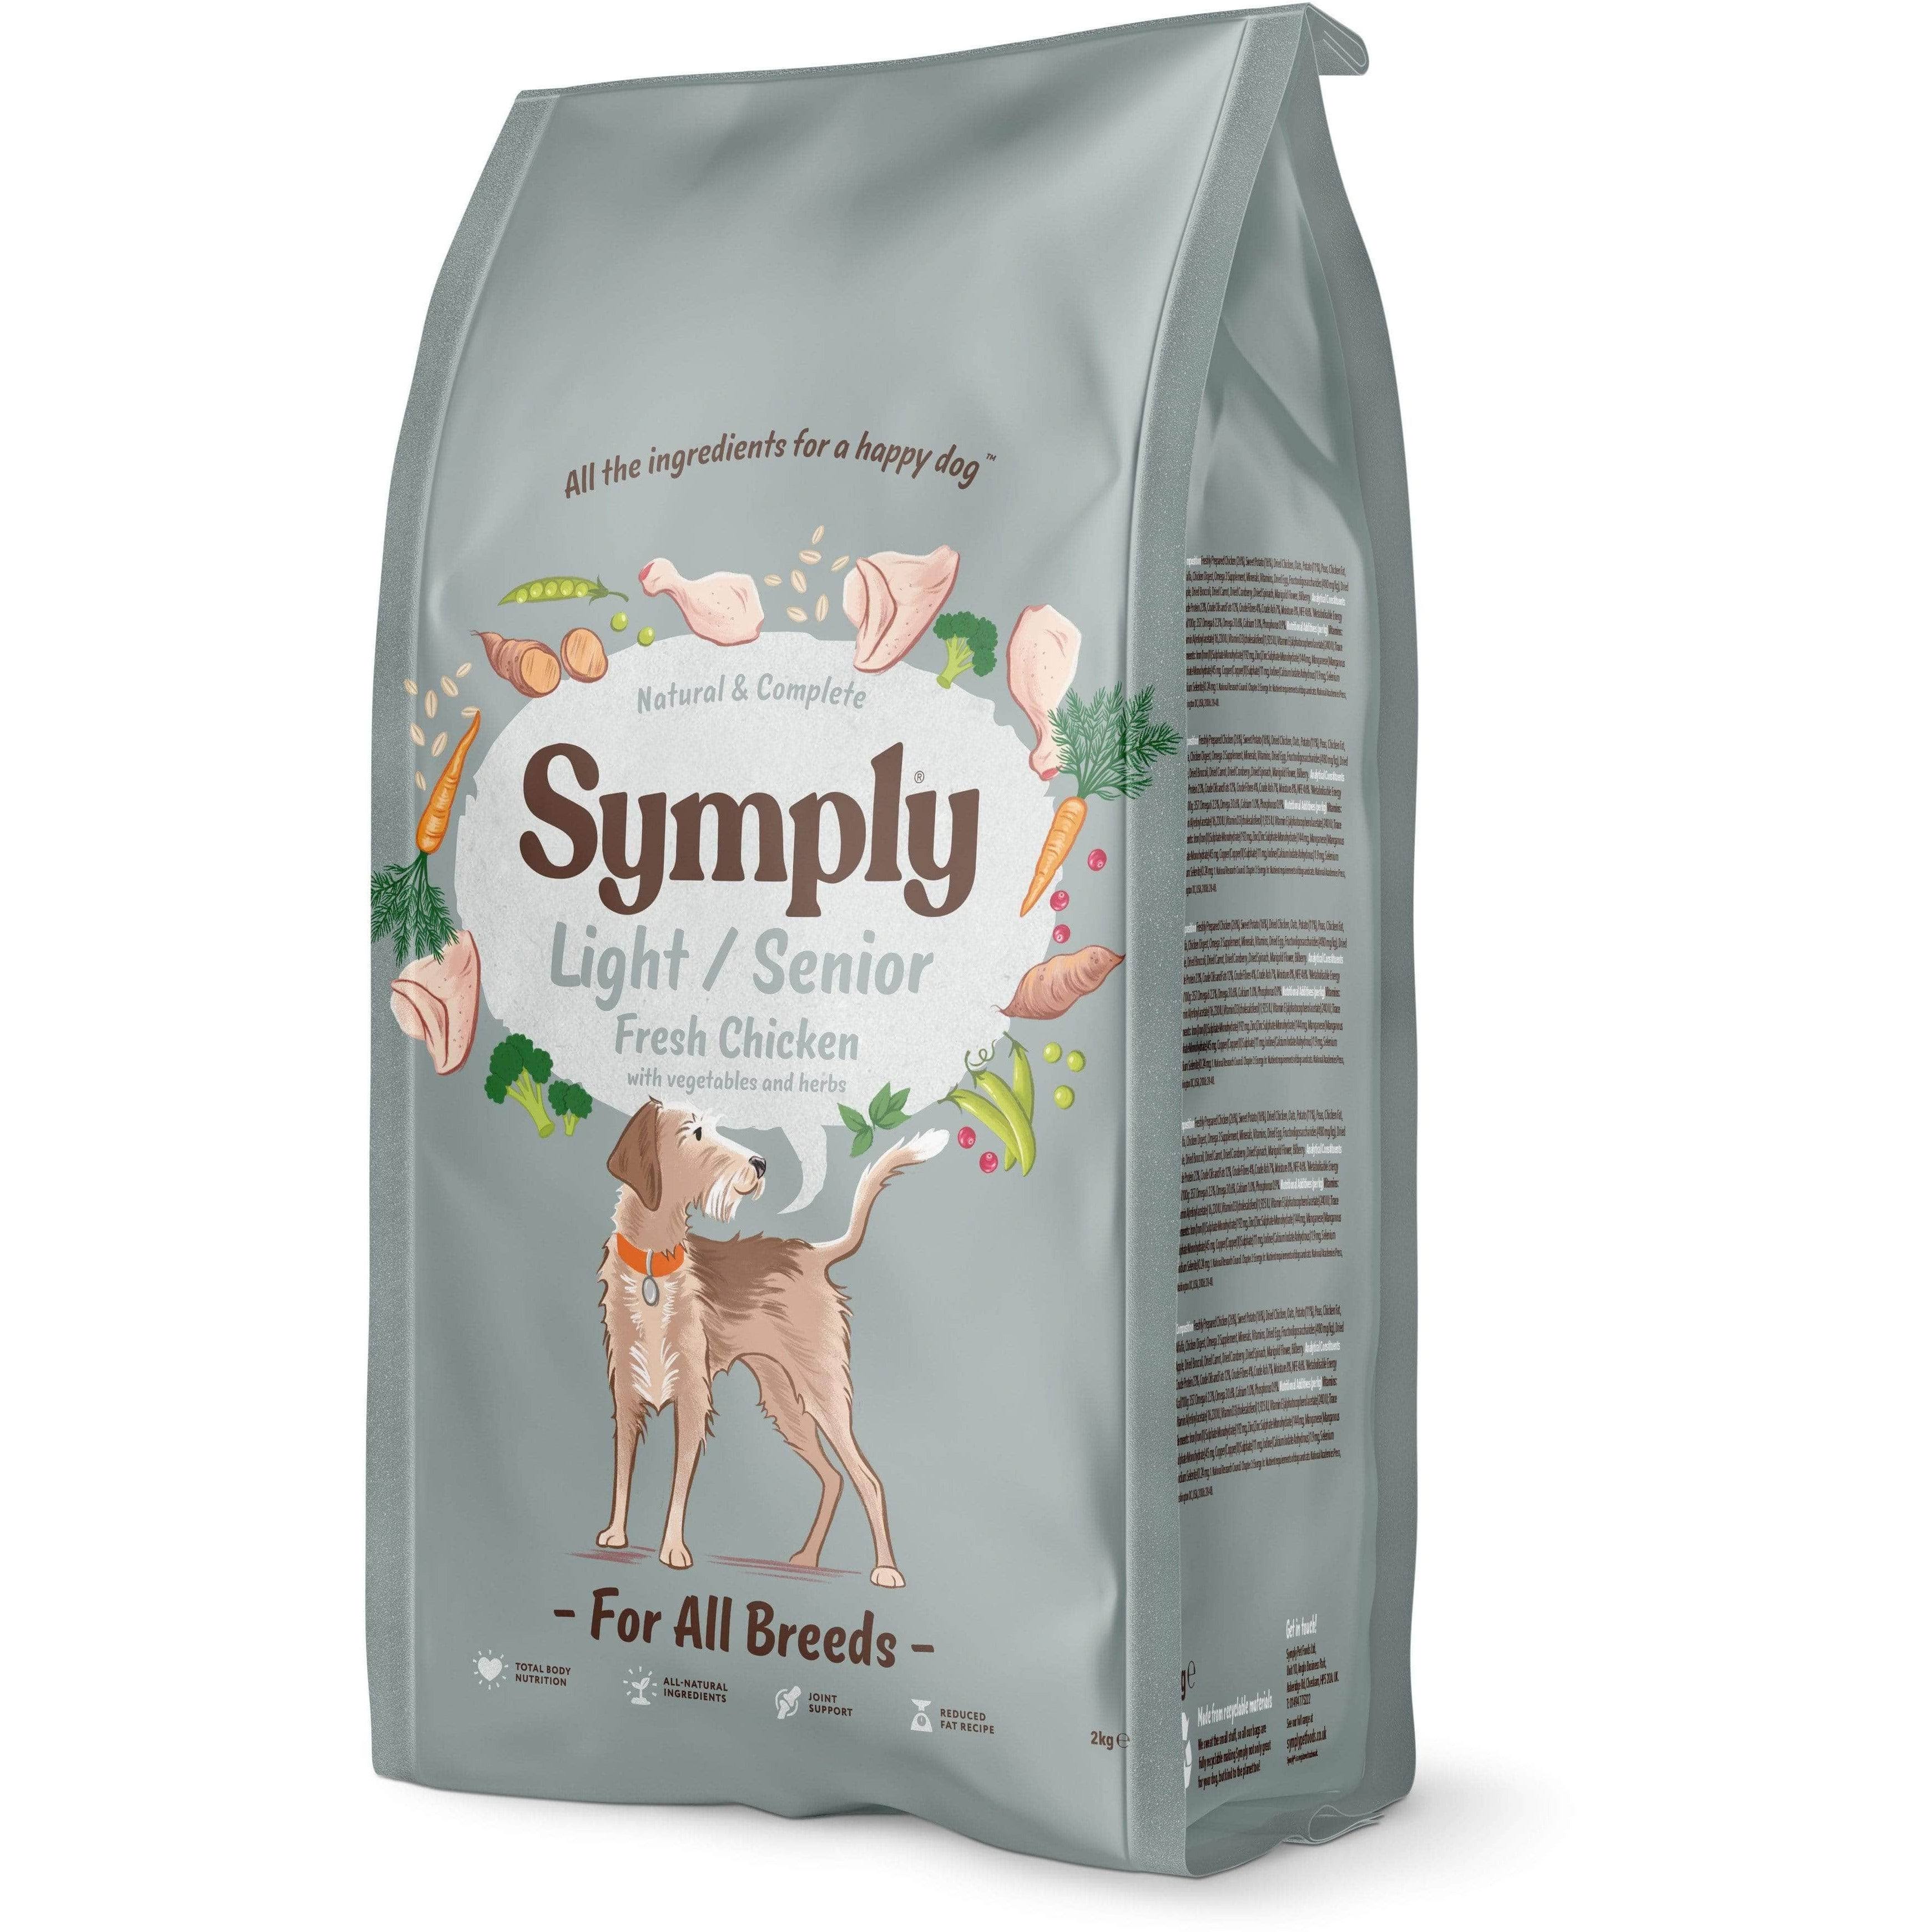 Symply Dog Food: Light/ Senior 2kg